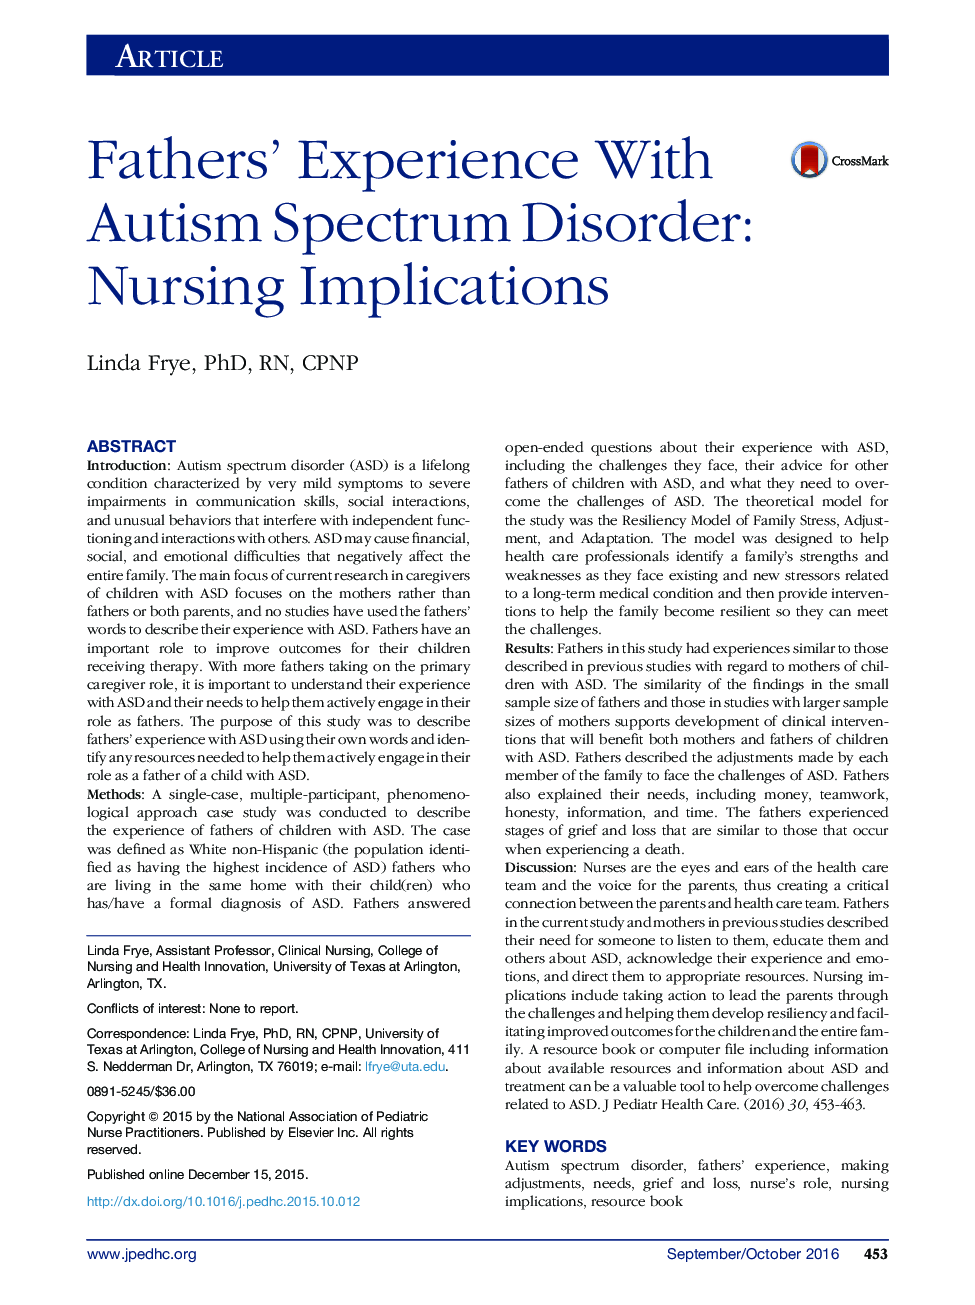 تجربه پدران با اختلال طیف اوتیسم: پیامدهای پرستاری